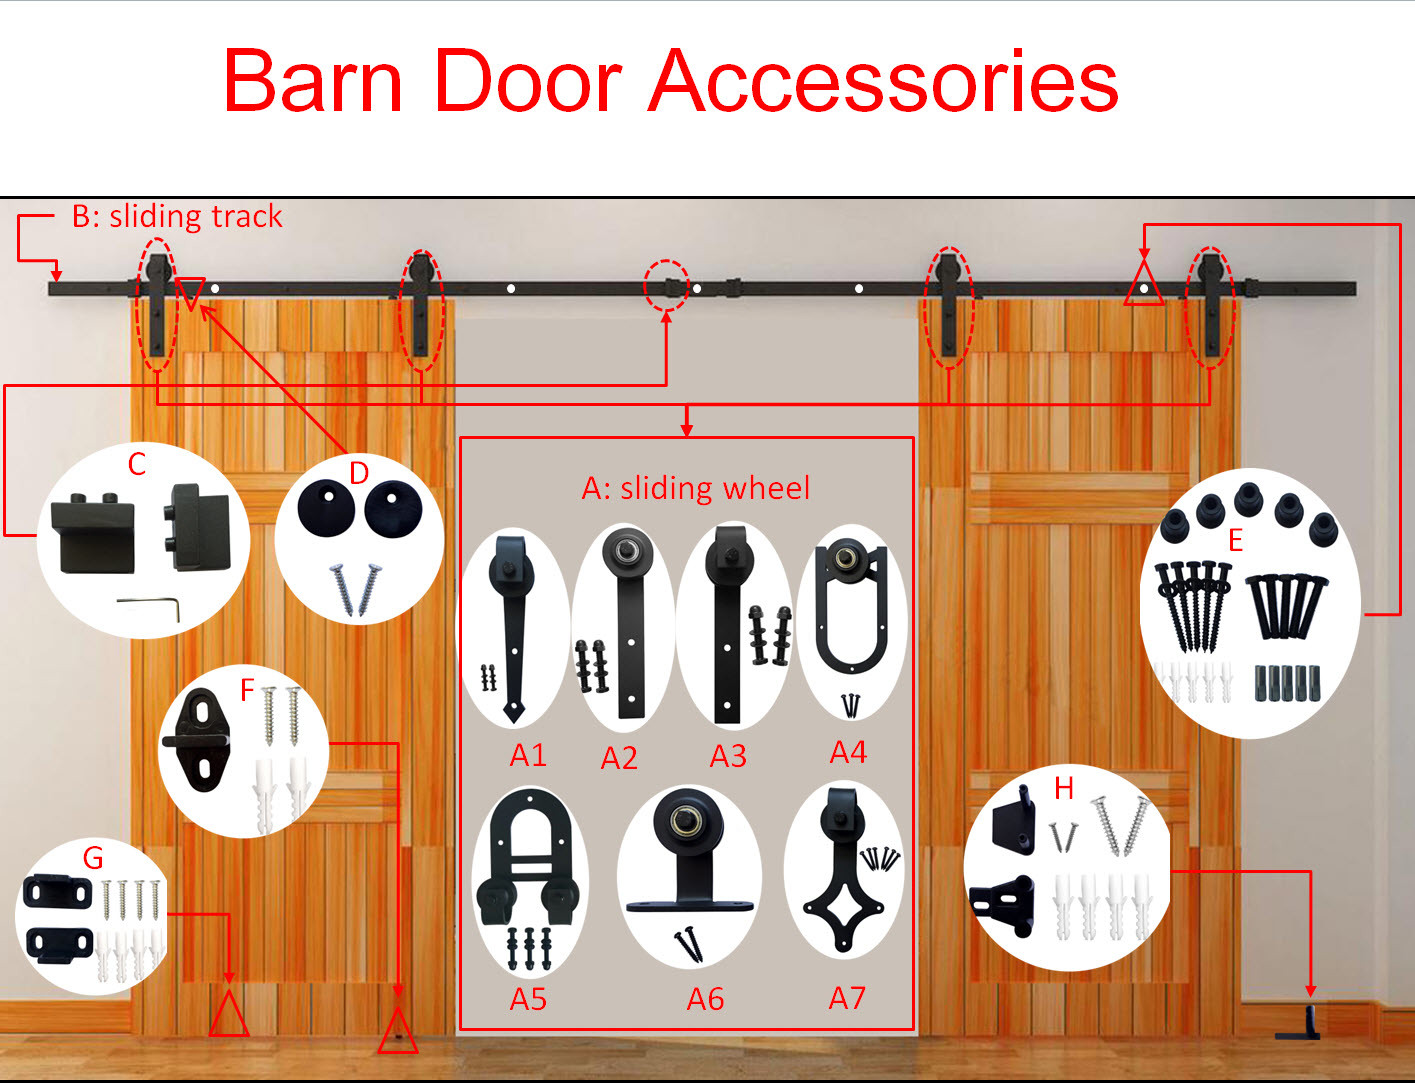 Hardware Slidinging Barn Door Accessories